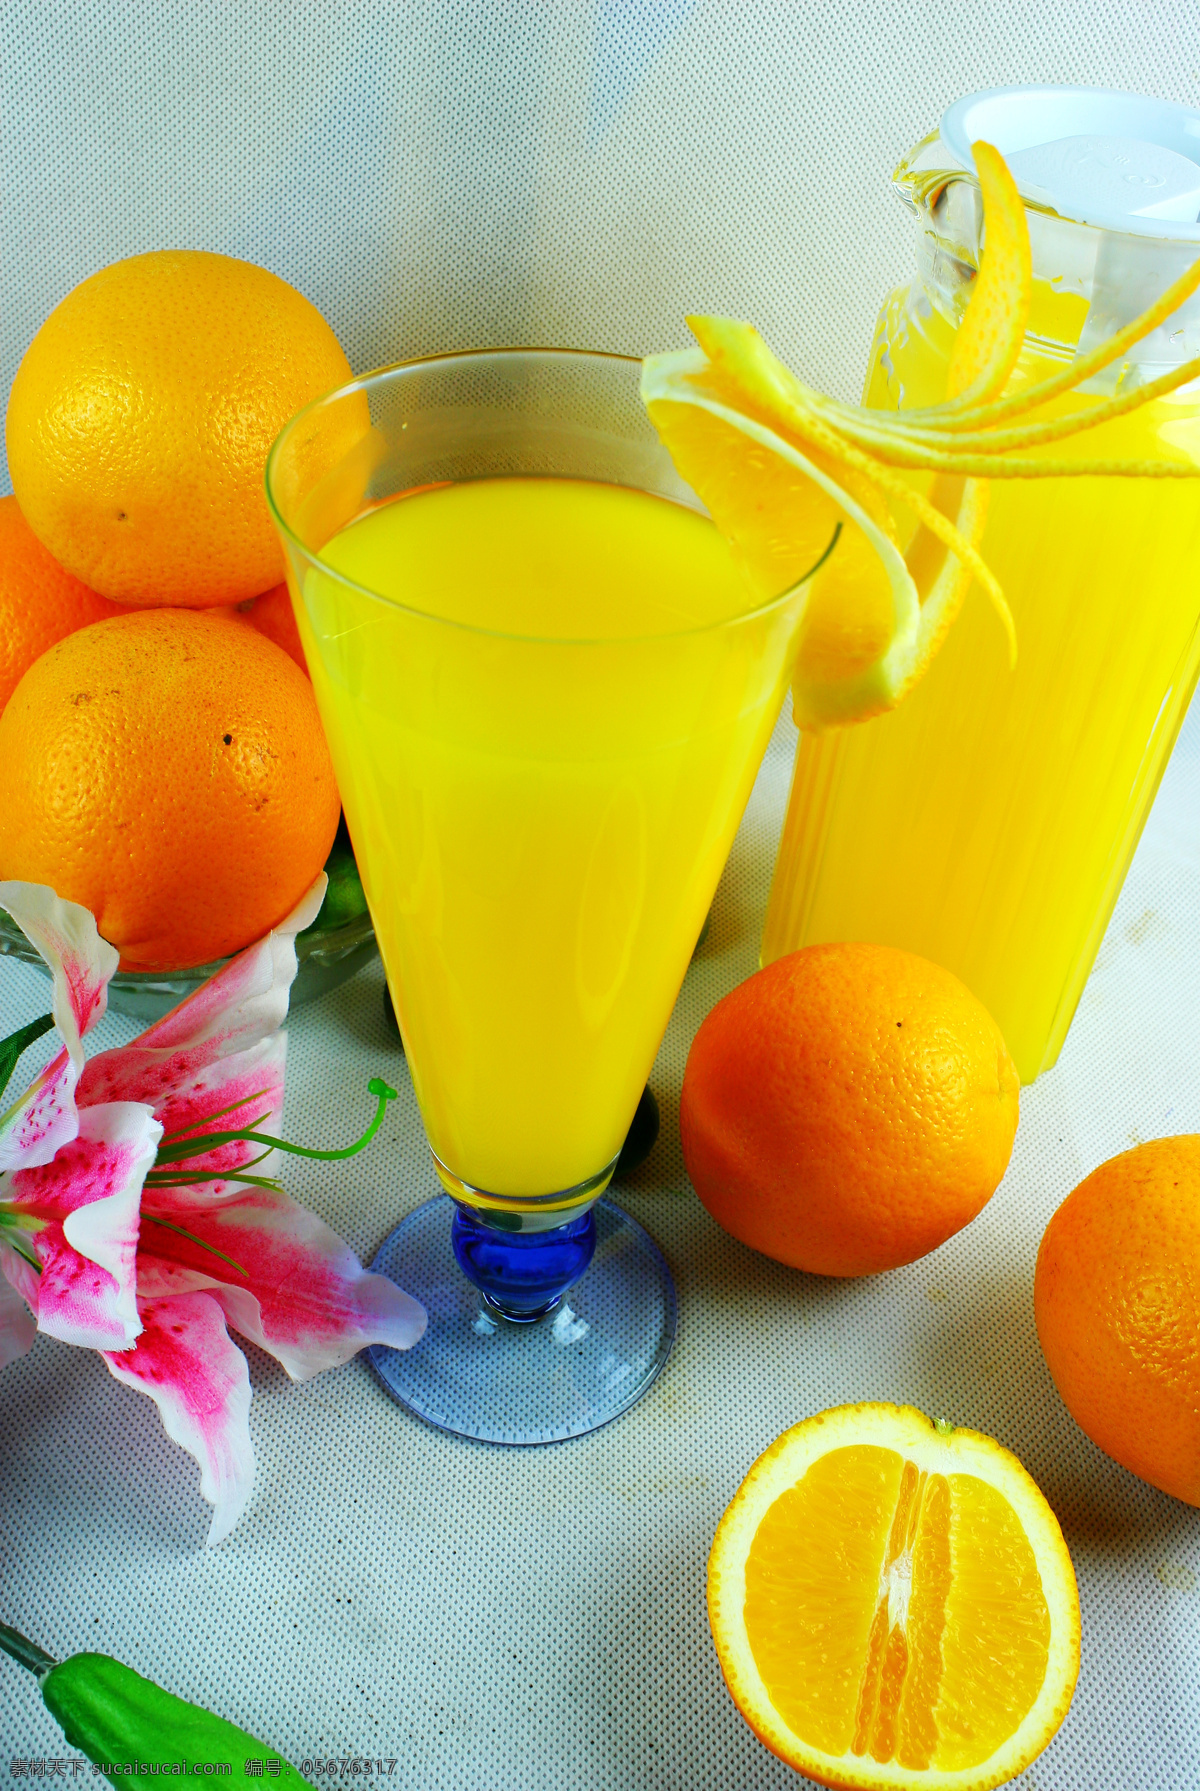 柳橙汁 鲜榨橙汁 橙子 橙汁 新鲜柳橙汁 果汁 水果 饮料 解渴 食品饮料 饮料酒水 果汁饮料 餐饮美食